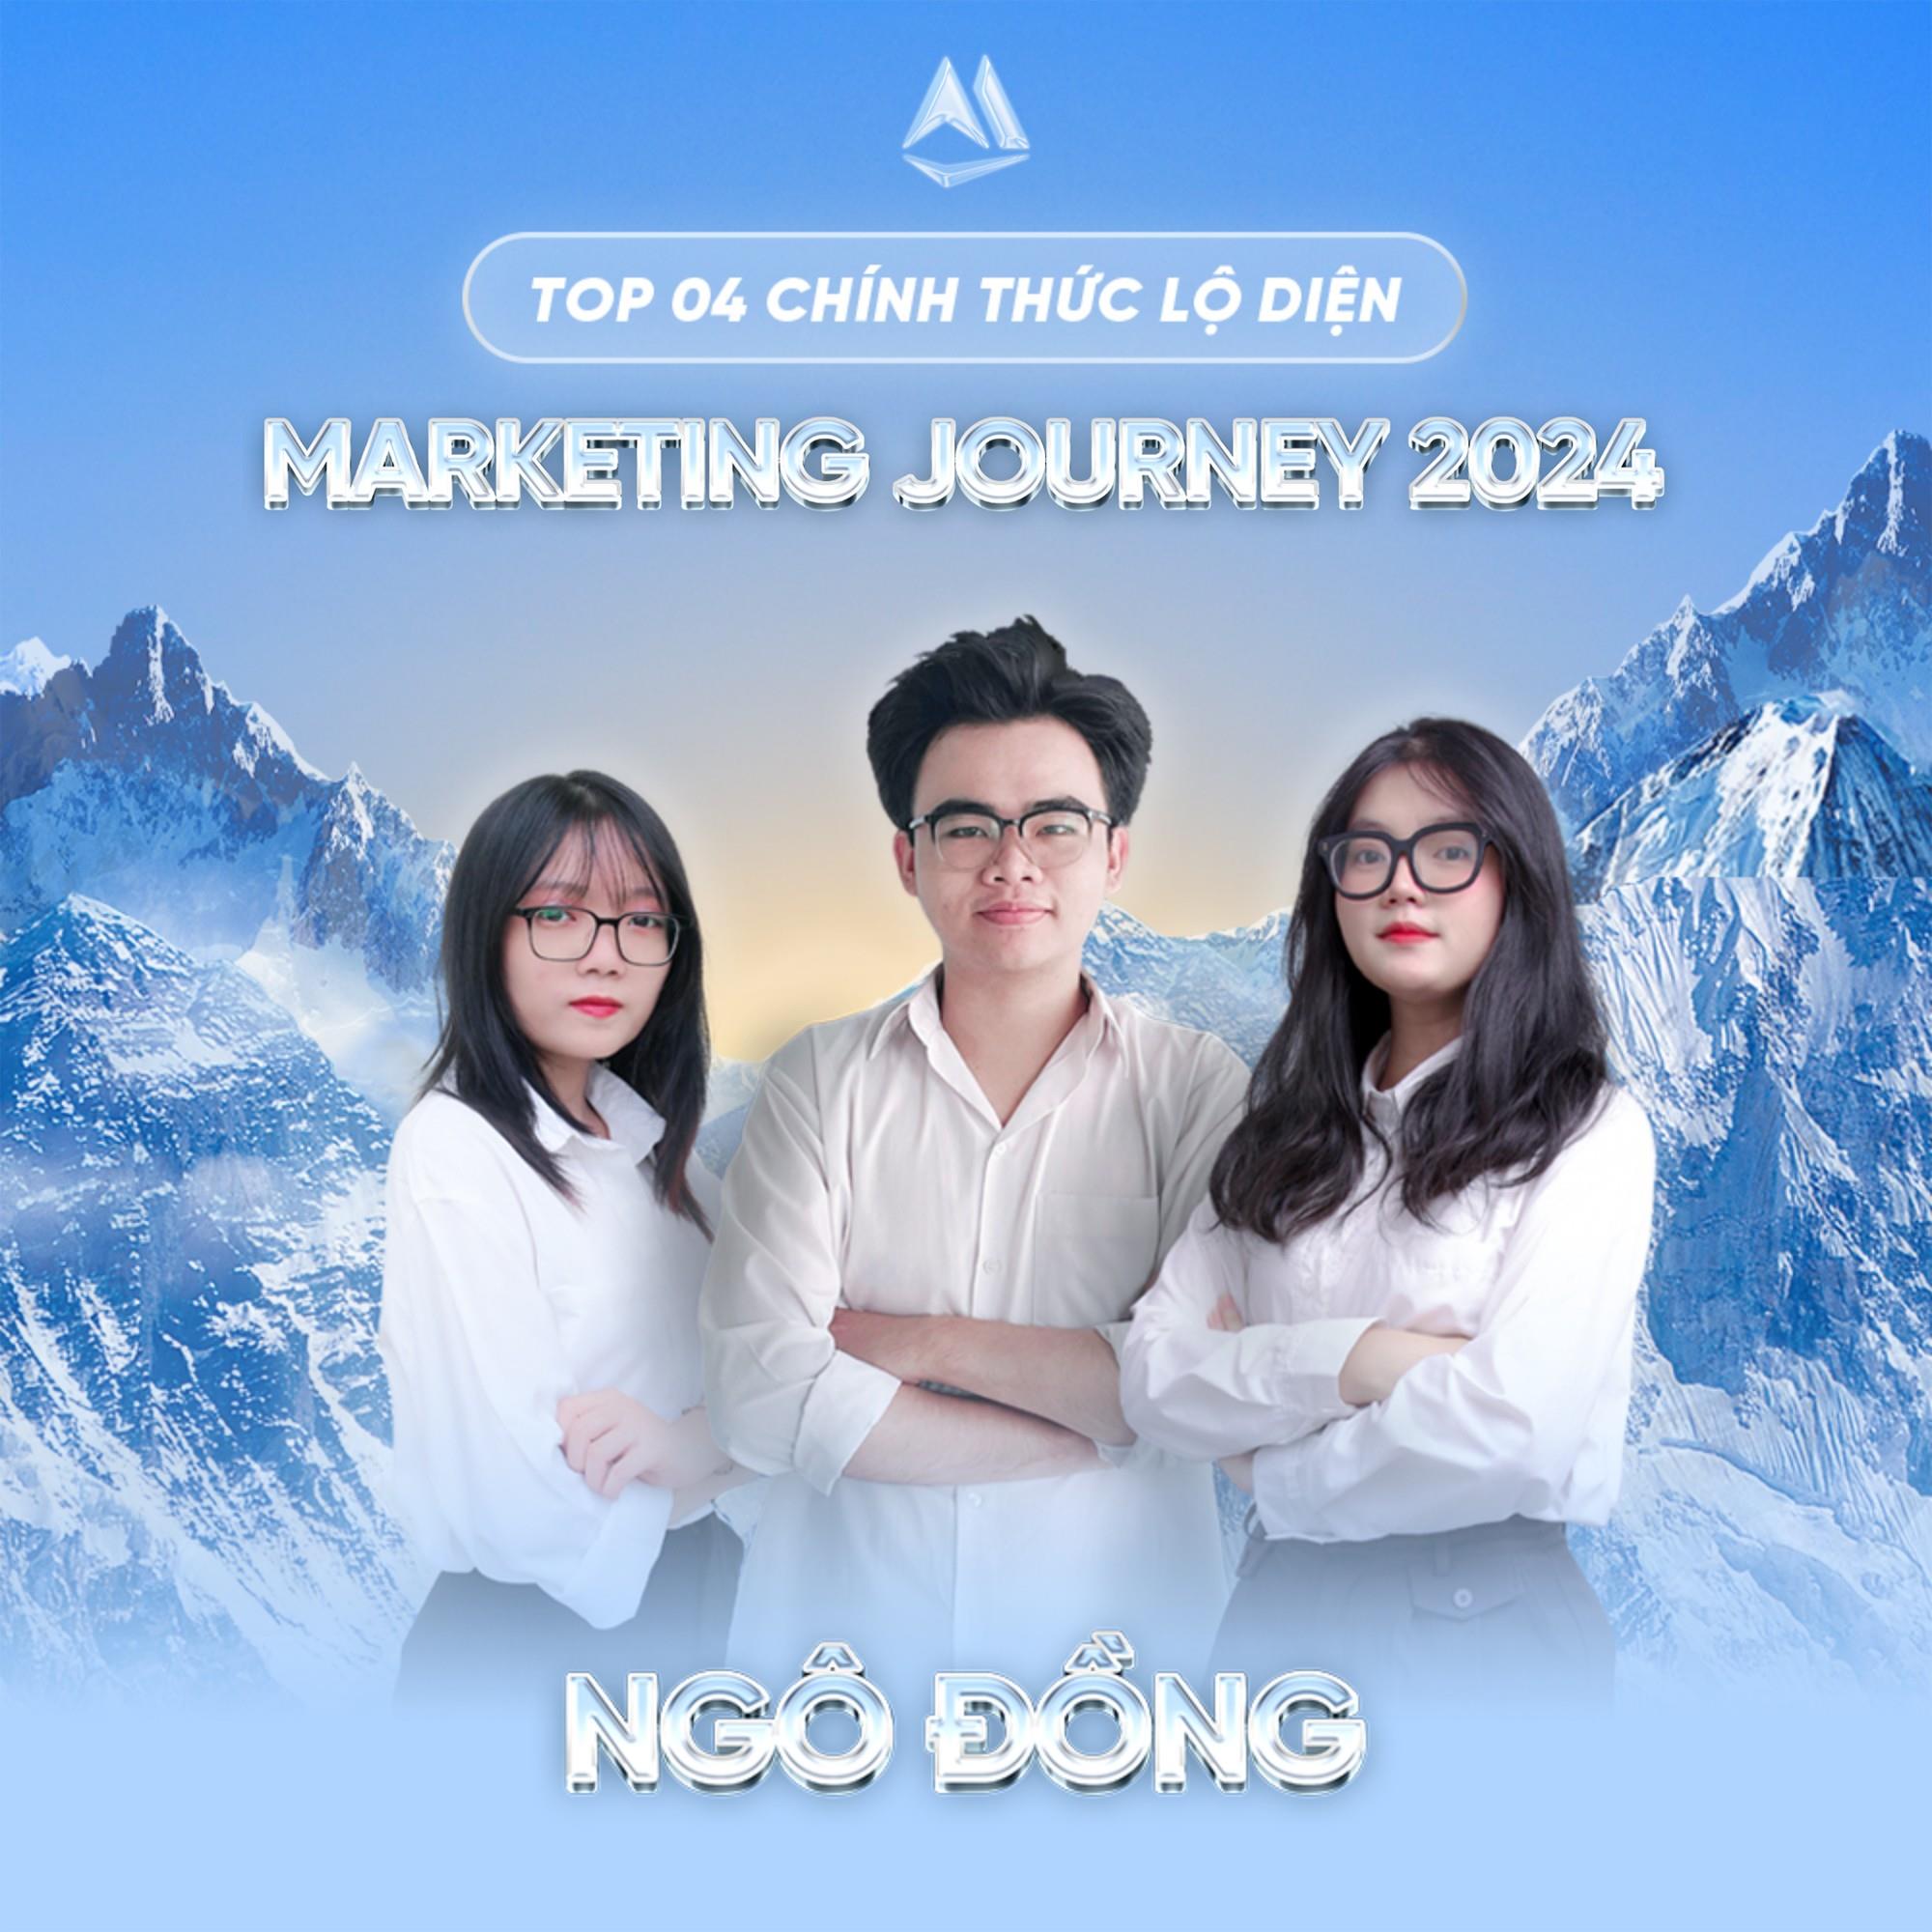 [trithuccuocsong] Chung kết Marketing Journey 2024: Nơi tỏa sáng của những con người tiên phong khai phá chinh phục đỉnh cao